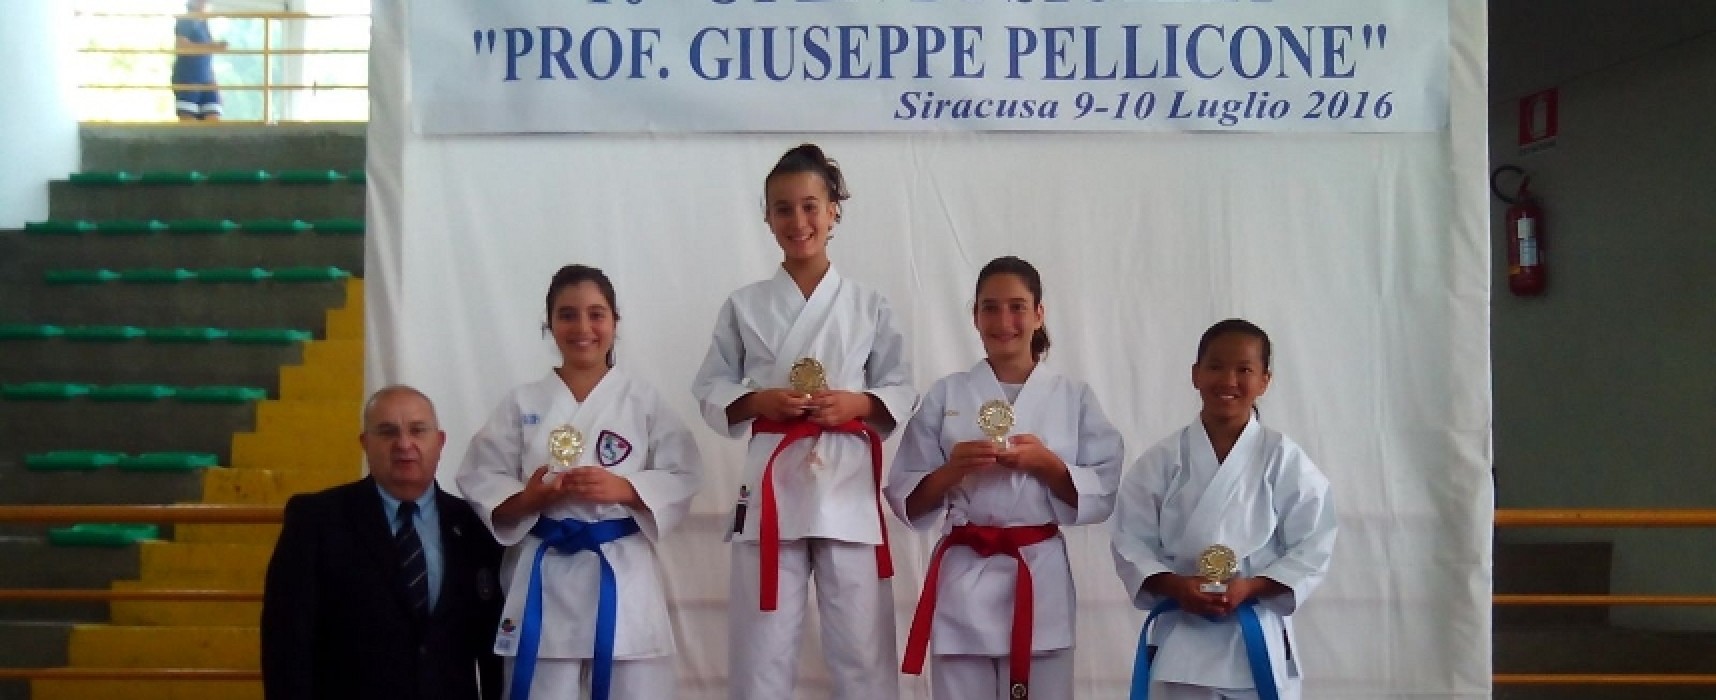 Gruppo Sportivo Fiamme Cremisi Bersaglieri Bisceglie, due medaglie in terra siciliana